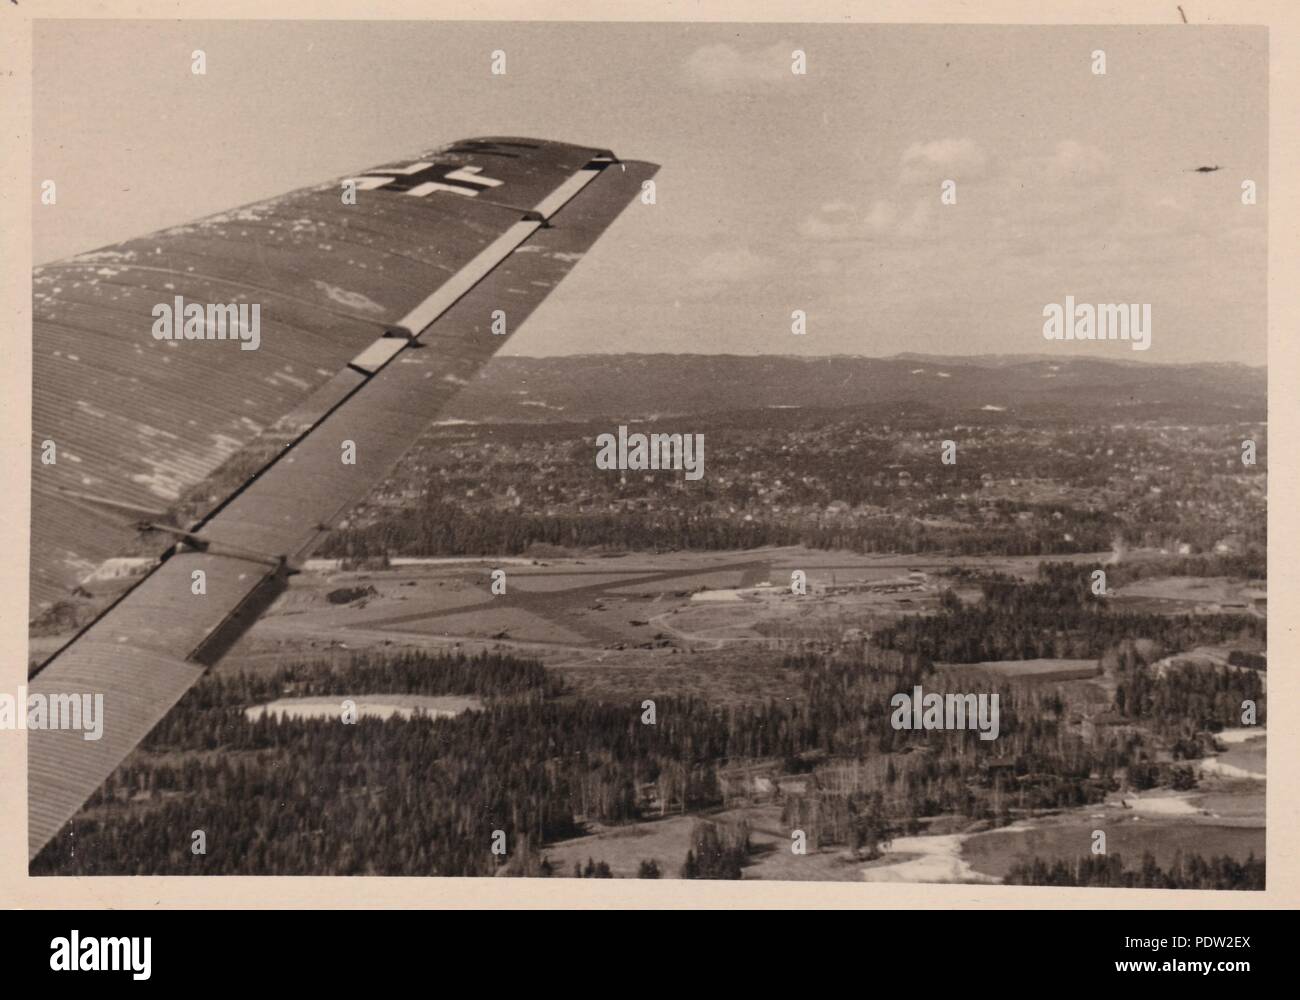 Droit de l'album photo de Karl Oberfeldwebel Gendner de 1. La Kampfgeschwader 40 Staffel, : Le paysage norvégien, comme vu de l'air par l'équipage d'un Junkers Ju 52/3m de 3 avions de transport./KGzbV 1 en mai 1940. Banque D'Images